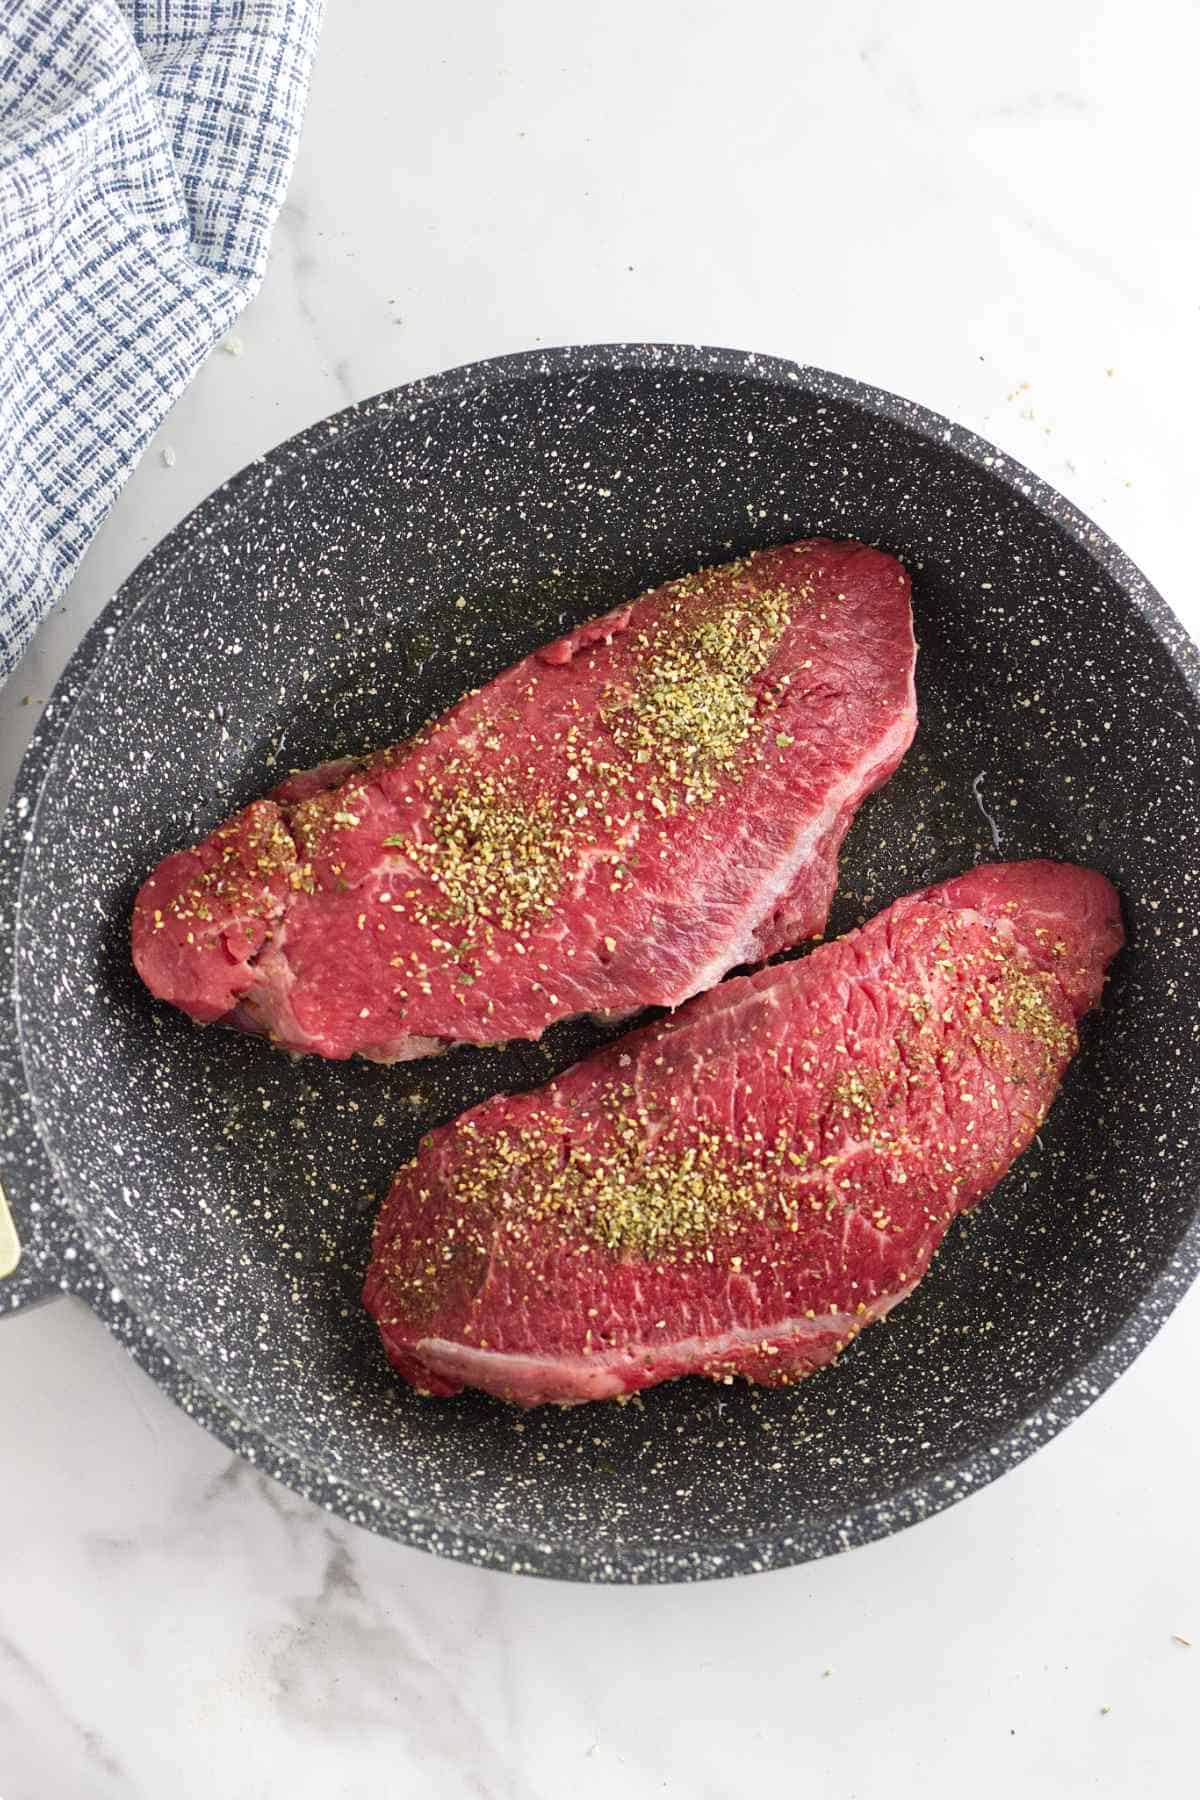 seasoned steaks sizzling in a skillet.